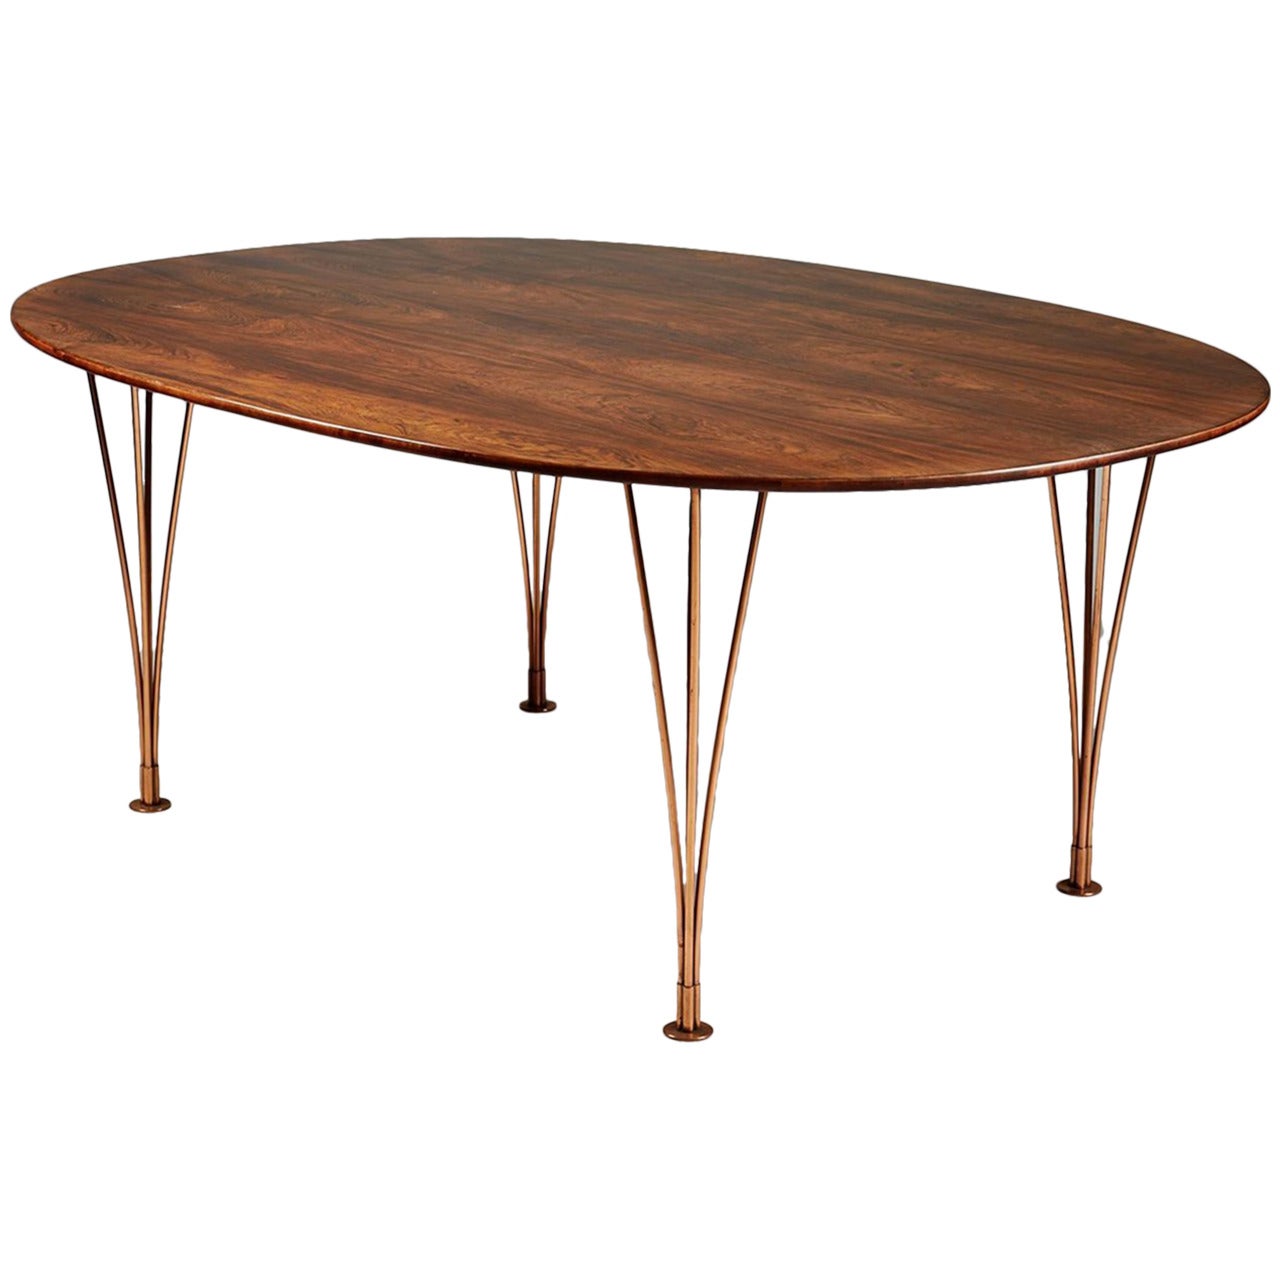 Table Designed by Bruno Mathsson and Piet Hein, Karl Mathsson, Sweden, 1964